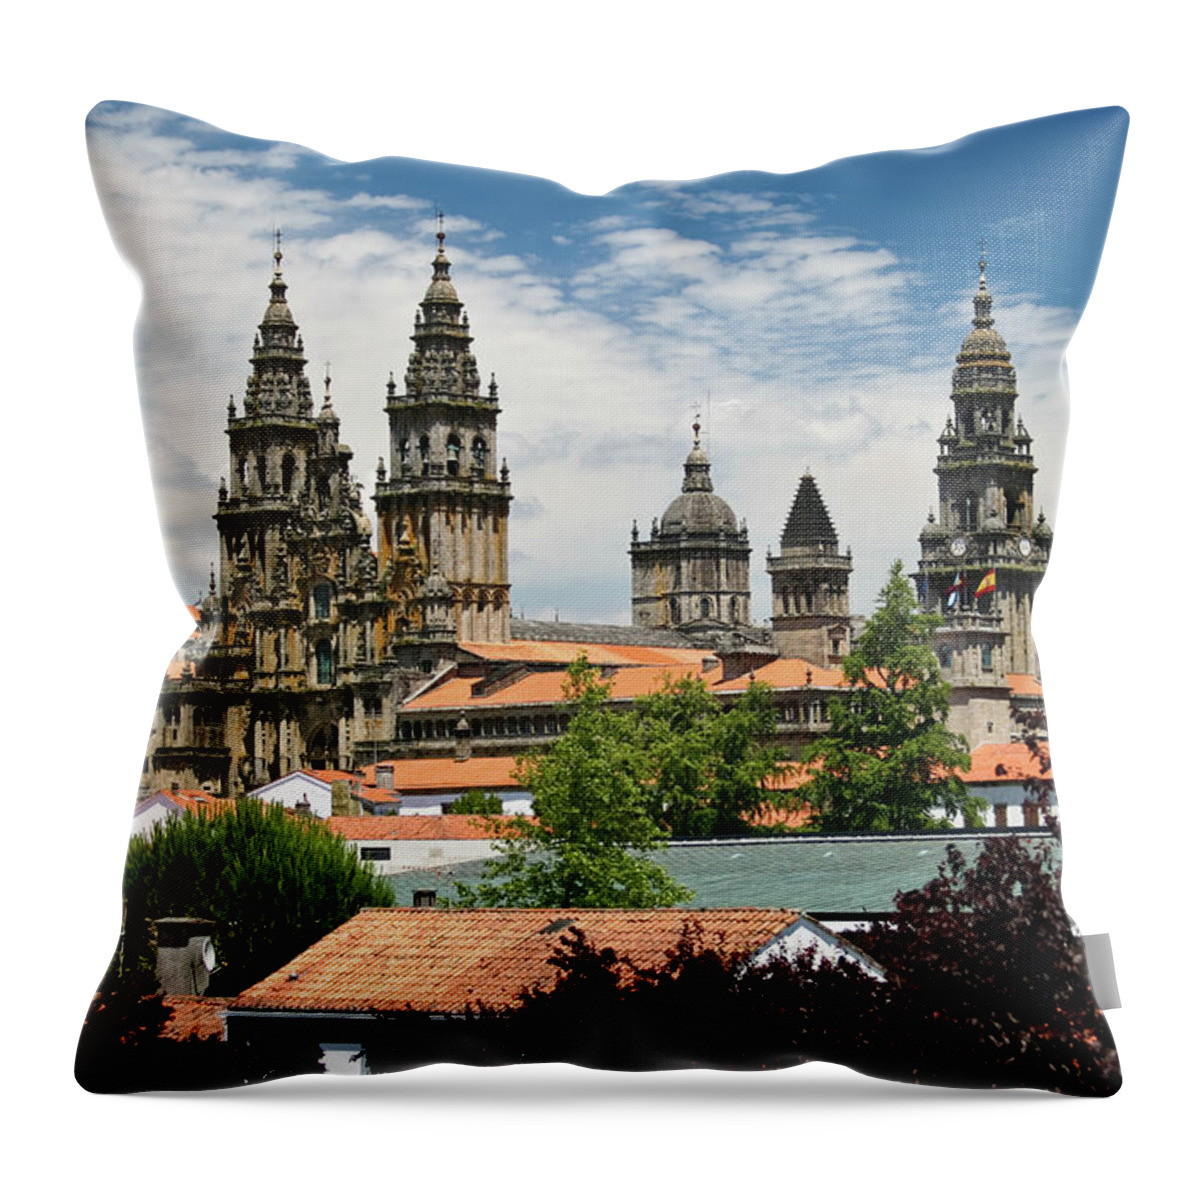 Gothic Style Throw Pillow featuring the photograph Cityscape Of Santiago De Compostela by Ciburaska